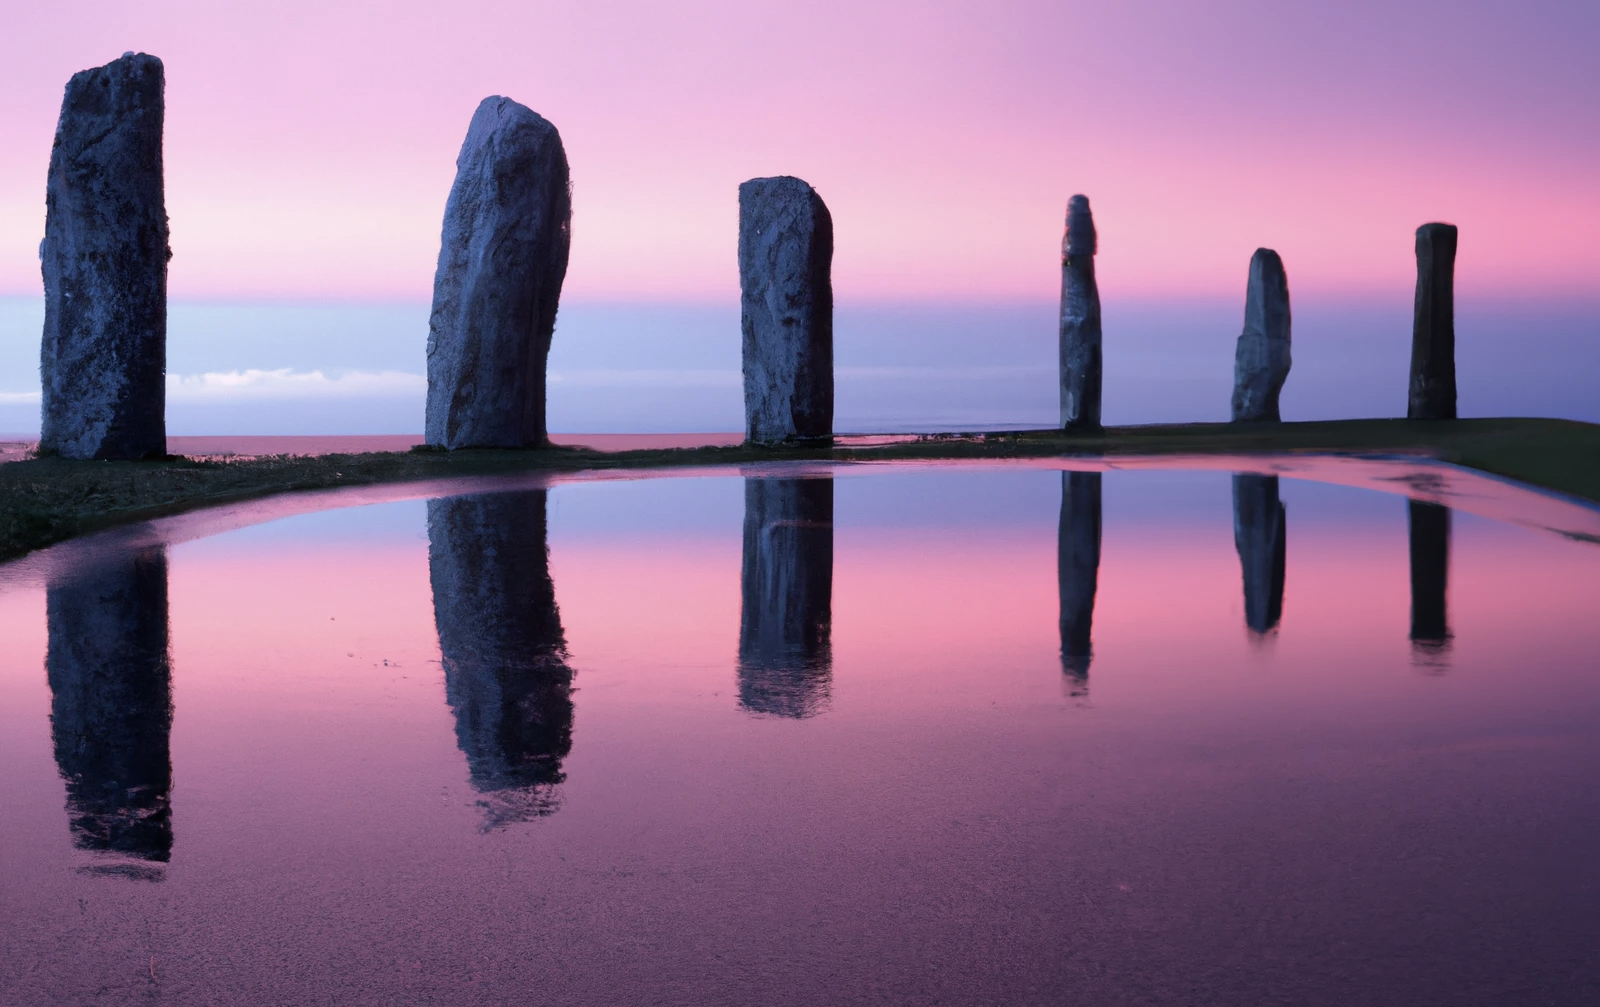 DALL·E 2022-12-01 18.49.45 - photographie de quatre menhirs brisés qui se reflètent dans une surface d'eau visqueuse sur une esplanade de béton devant la mer dans les tons rose et.png